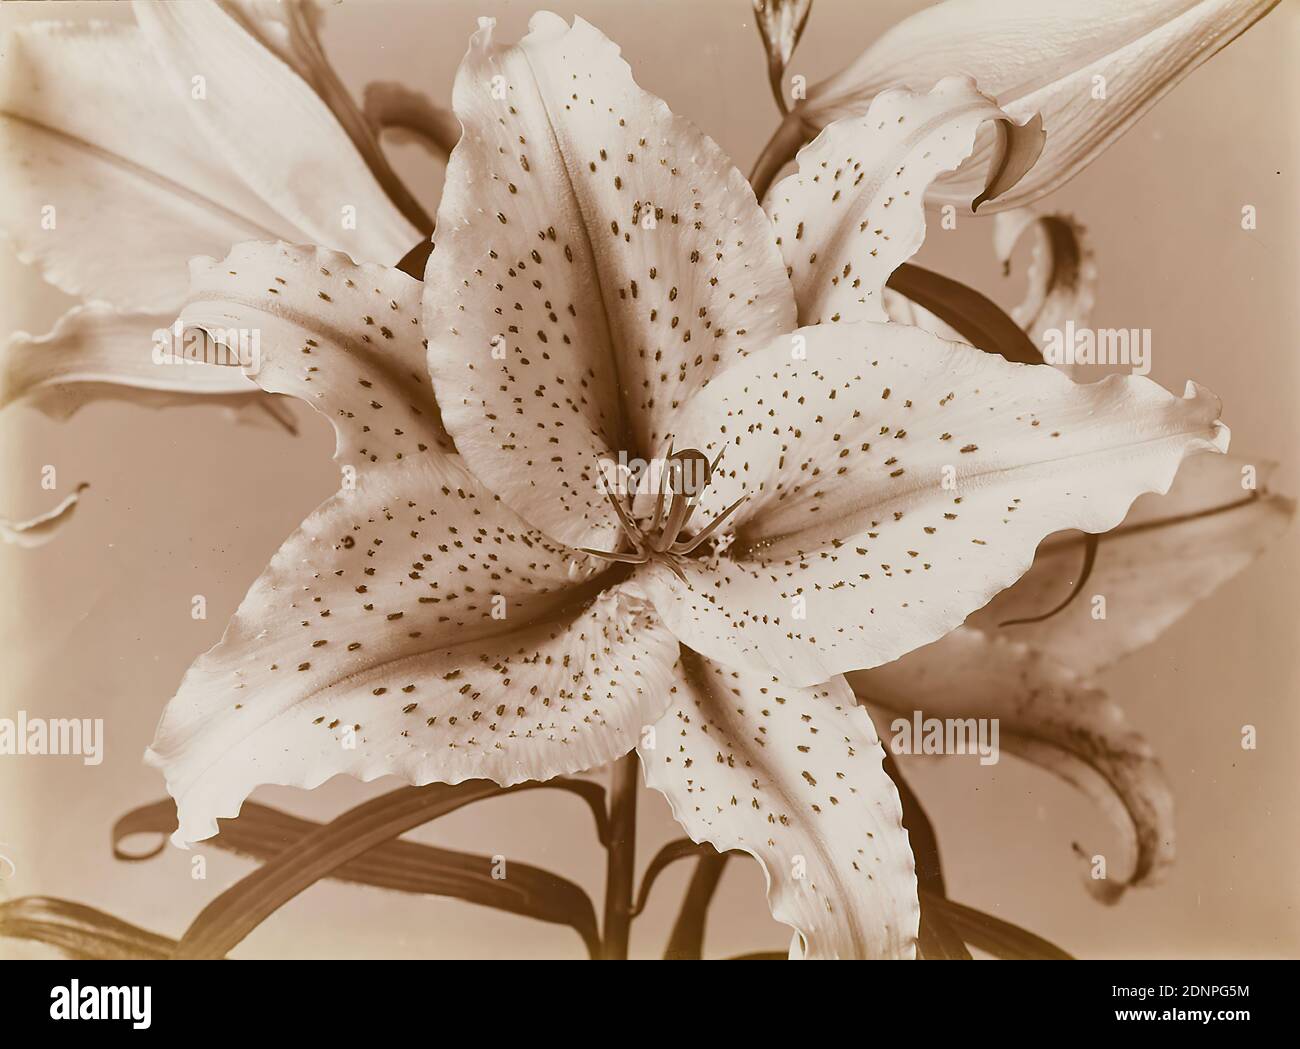 Wilhelm Weimar, Lily, papier collodion, procédé positif noir et blanc, taille de l'image: Hauteur: 17,30 cm; largeur: 23,30 cm, numéroté: Verso: 375, photographie, Lily Banque D'Images